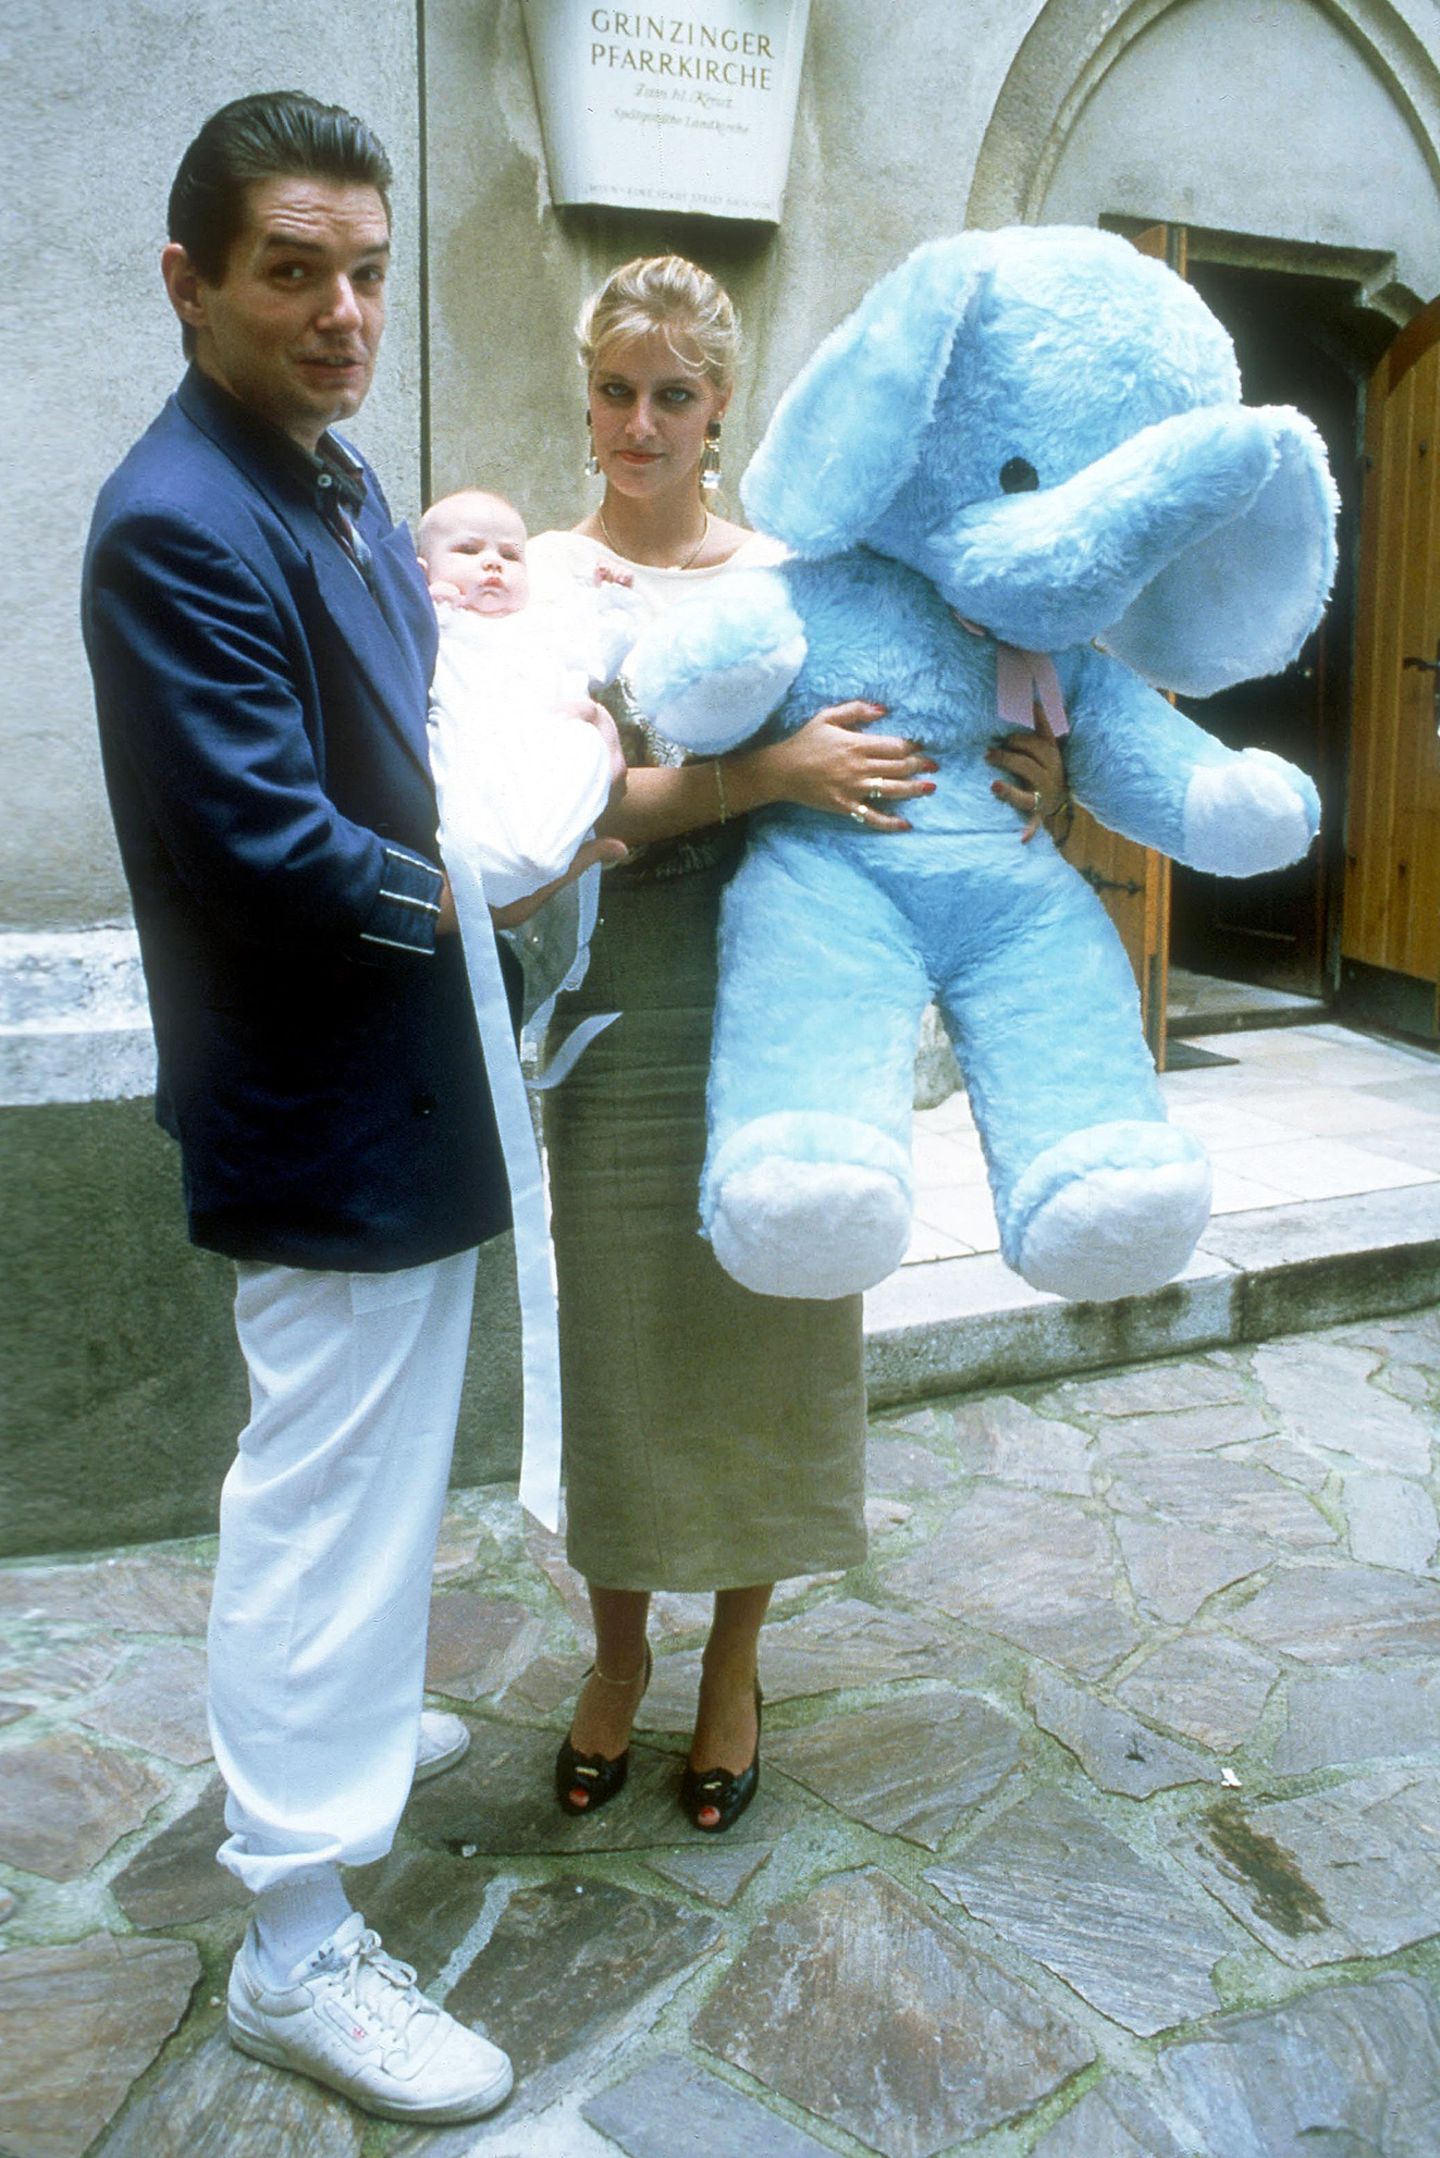 Am 13. März 1986 brachte Falcos Freundin und spätere Ehefrau Isabella Vitkovic Tochter Katharina Bianca zur Welt. Die Ehe zerbrach jedoch und ein Vaterschaftstest zeigte, dass Falco nicht der leibliche Vater seiner Tochter war. Sie bezweifelt das Testergebnis jedoch bis heute